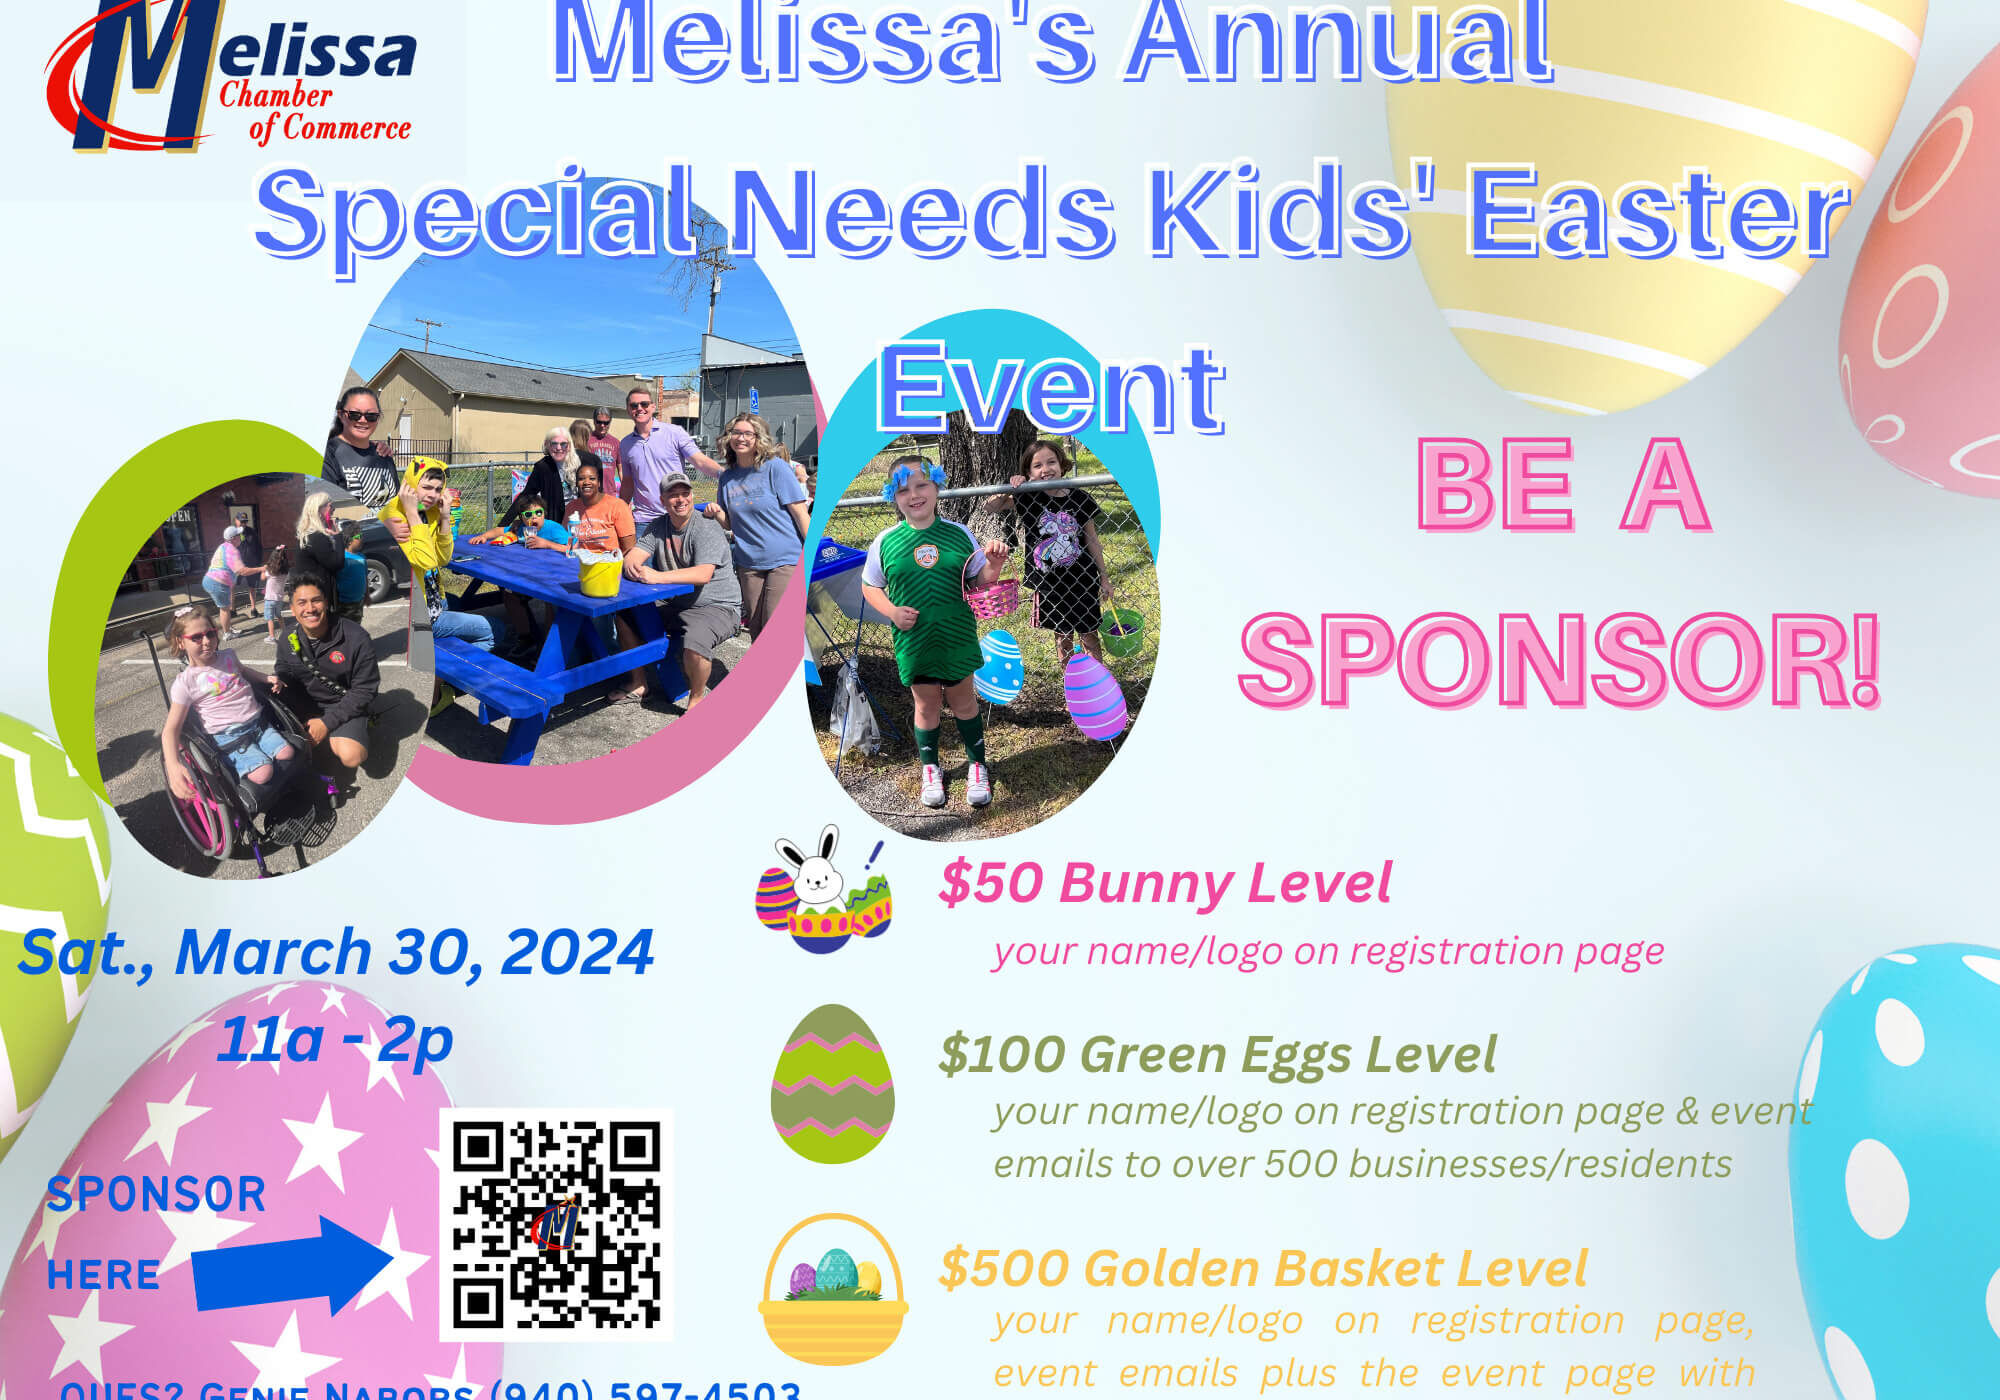 SPED Easter Event Sponsor Flyer_03.30.2024